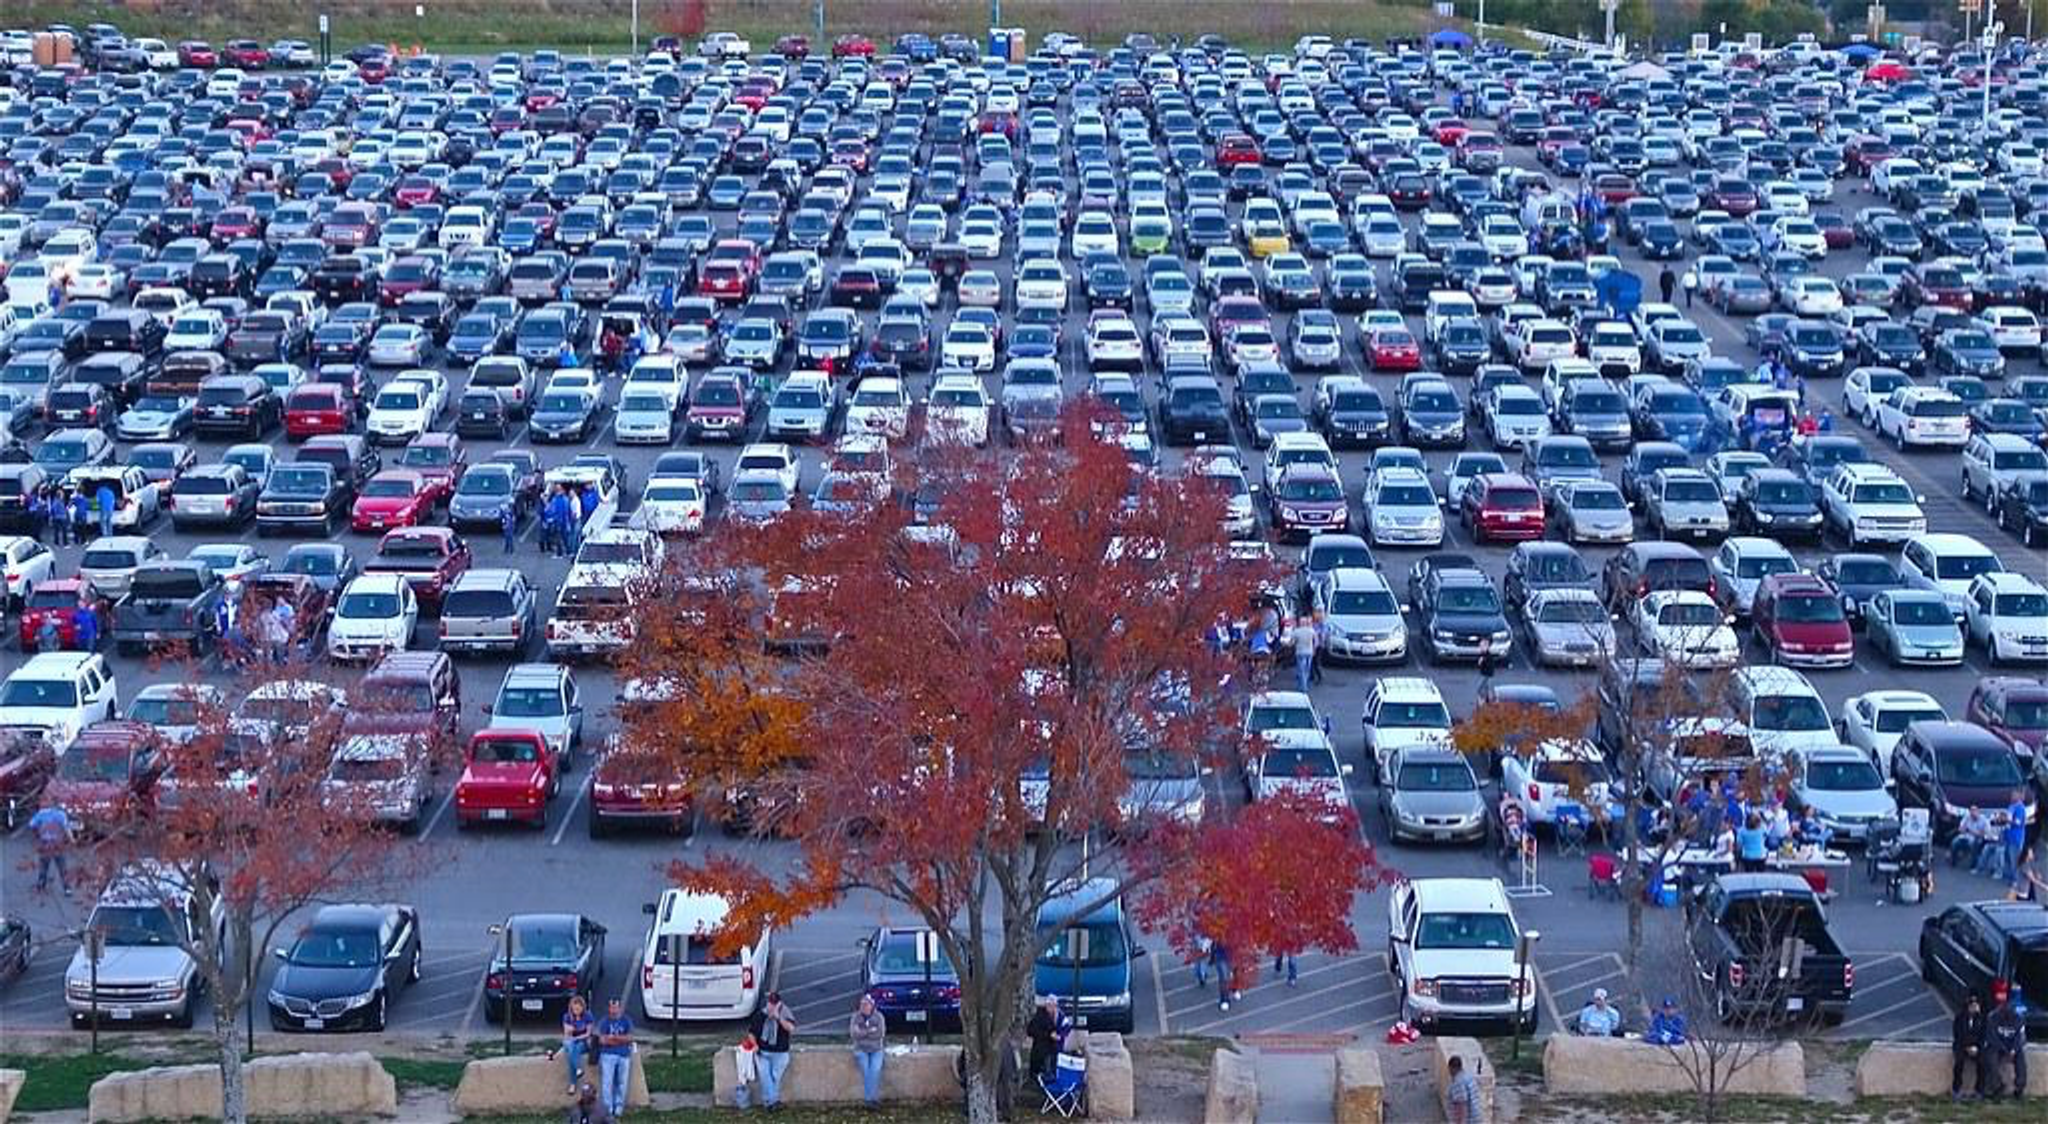 Des centaines de voitures dans un parking